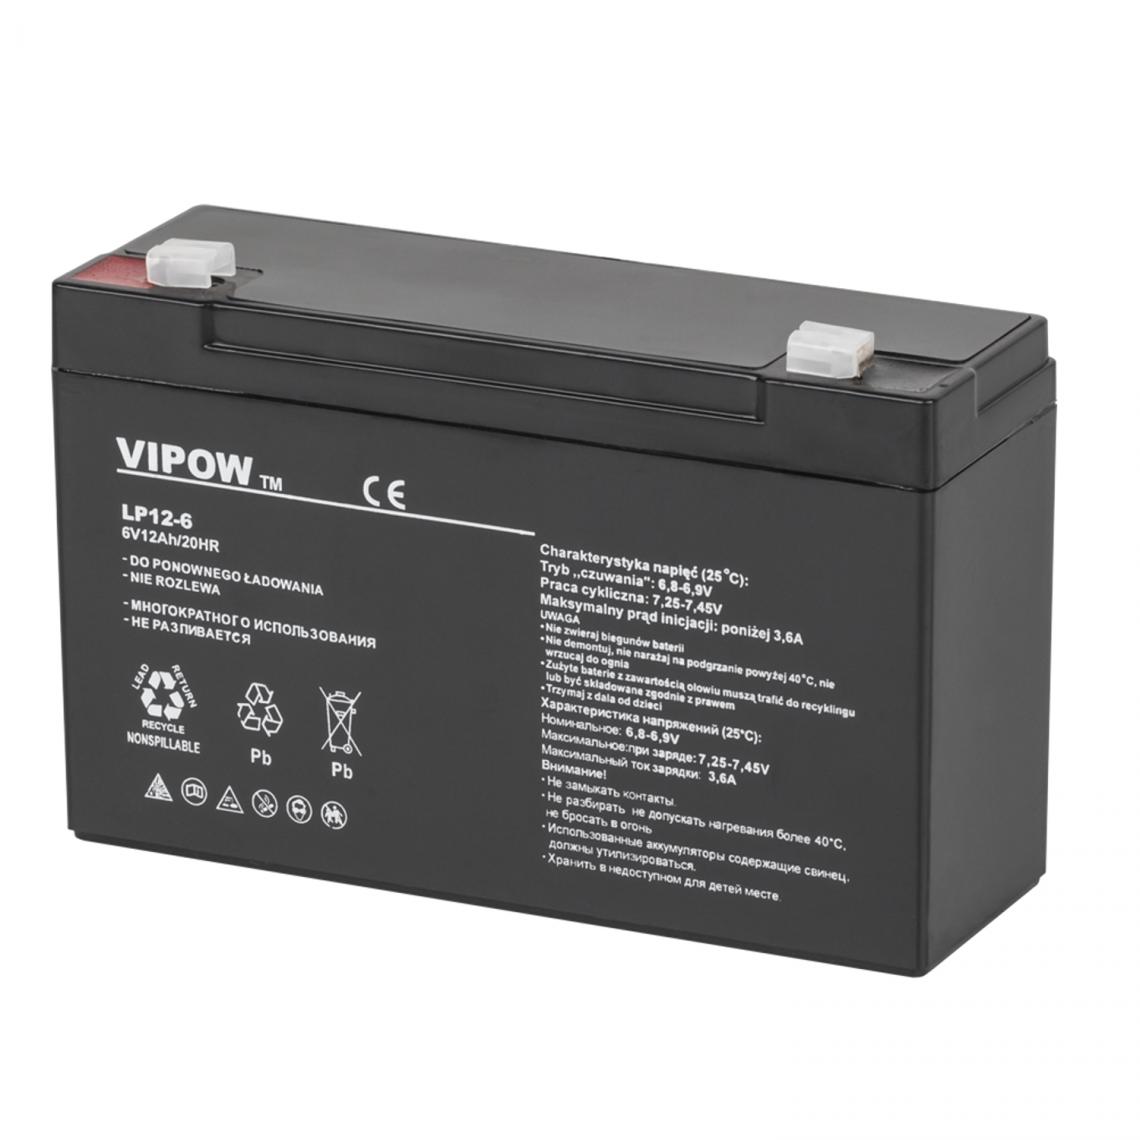 Sans Marque - Batterie gel rechargeable 6V 12Ah Vipow sans entretien - Accessoires alimentation